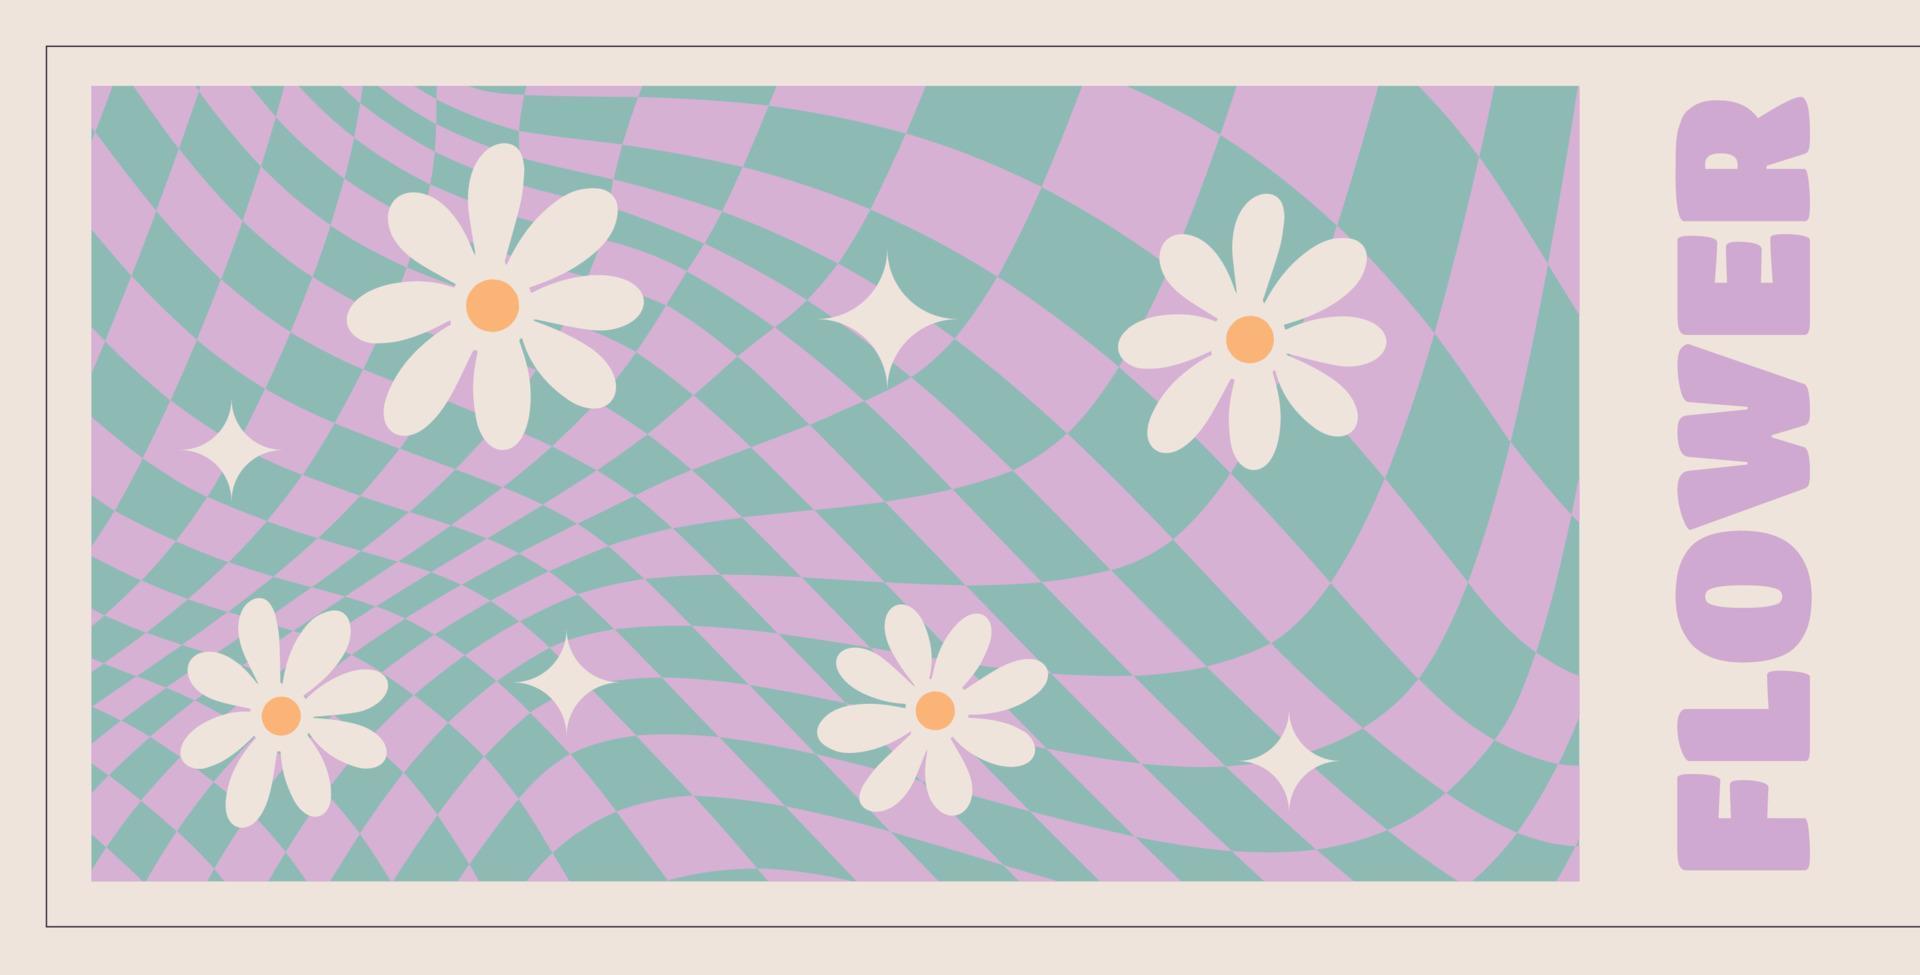 golvend kolken groovy madeliefje patroon Aan Purper kleur. jaren zeventig stijl, hippie achtergrond, psychedelisch Golf behang. hand- getrokken vlak vector illustratie